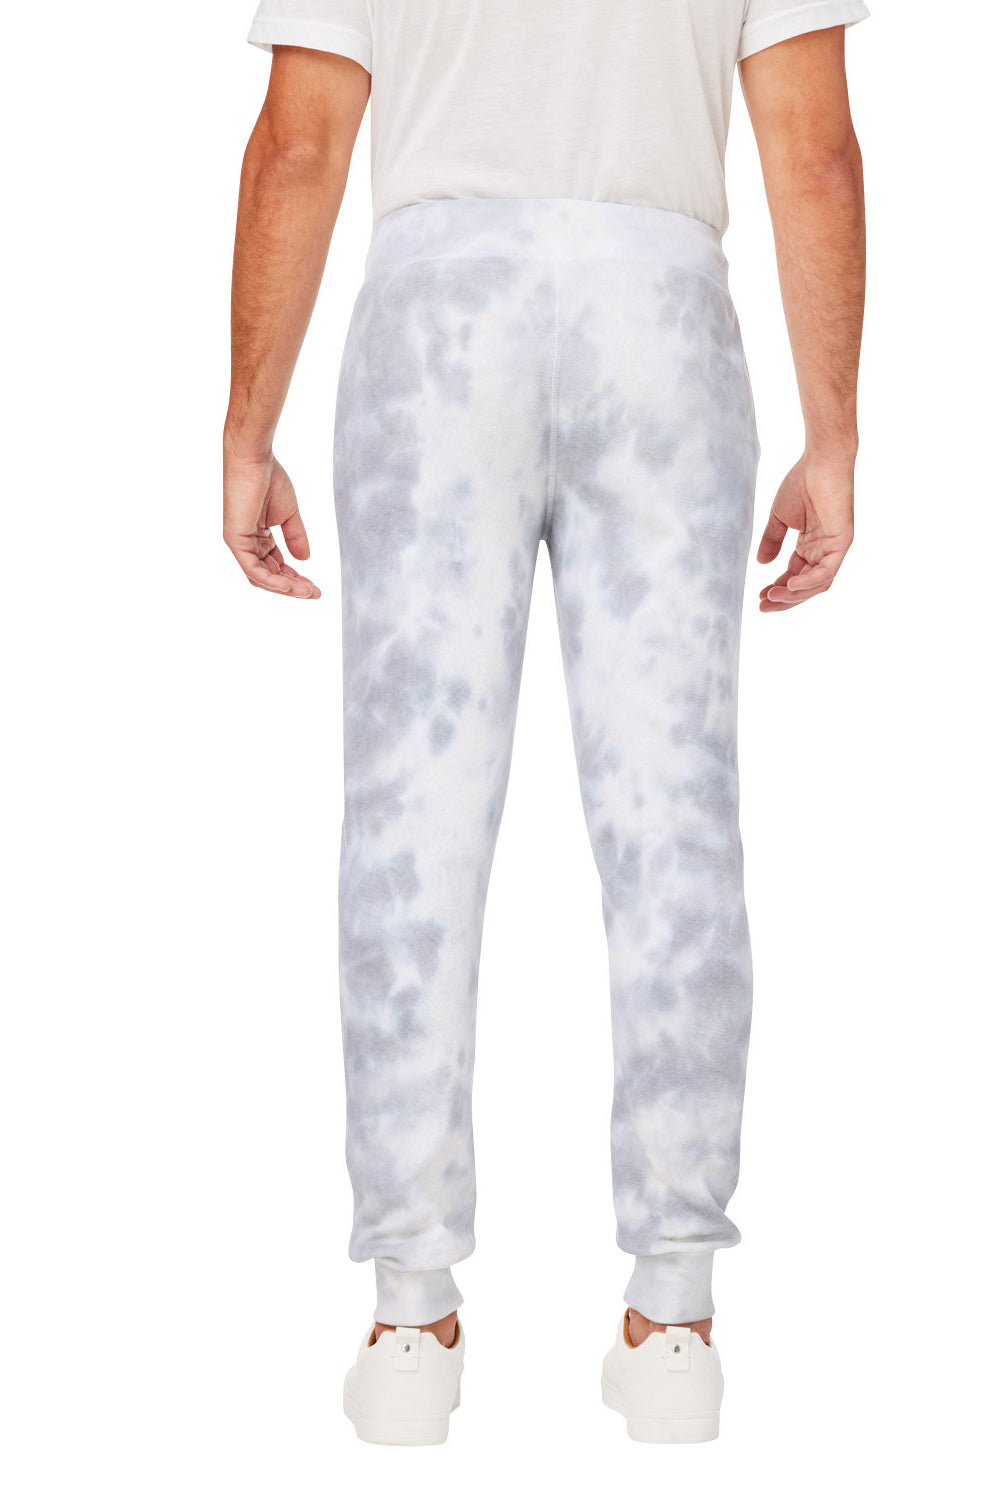 J America 8884JA Mens Tie-Dye Fleece Jogger Sweatpants w/ Pockets Grey Back